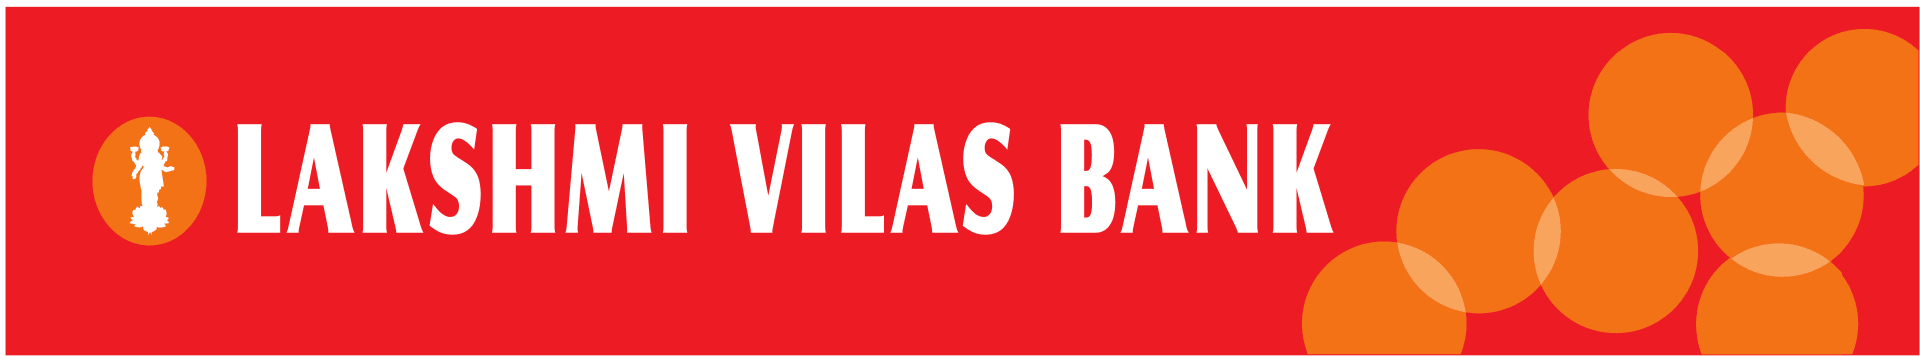 marketing strategy of lakshmi vilas bank - logo